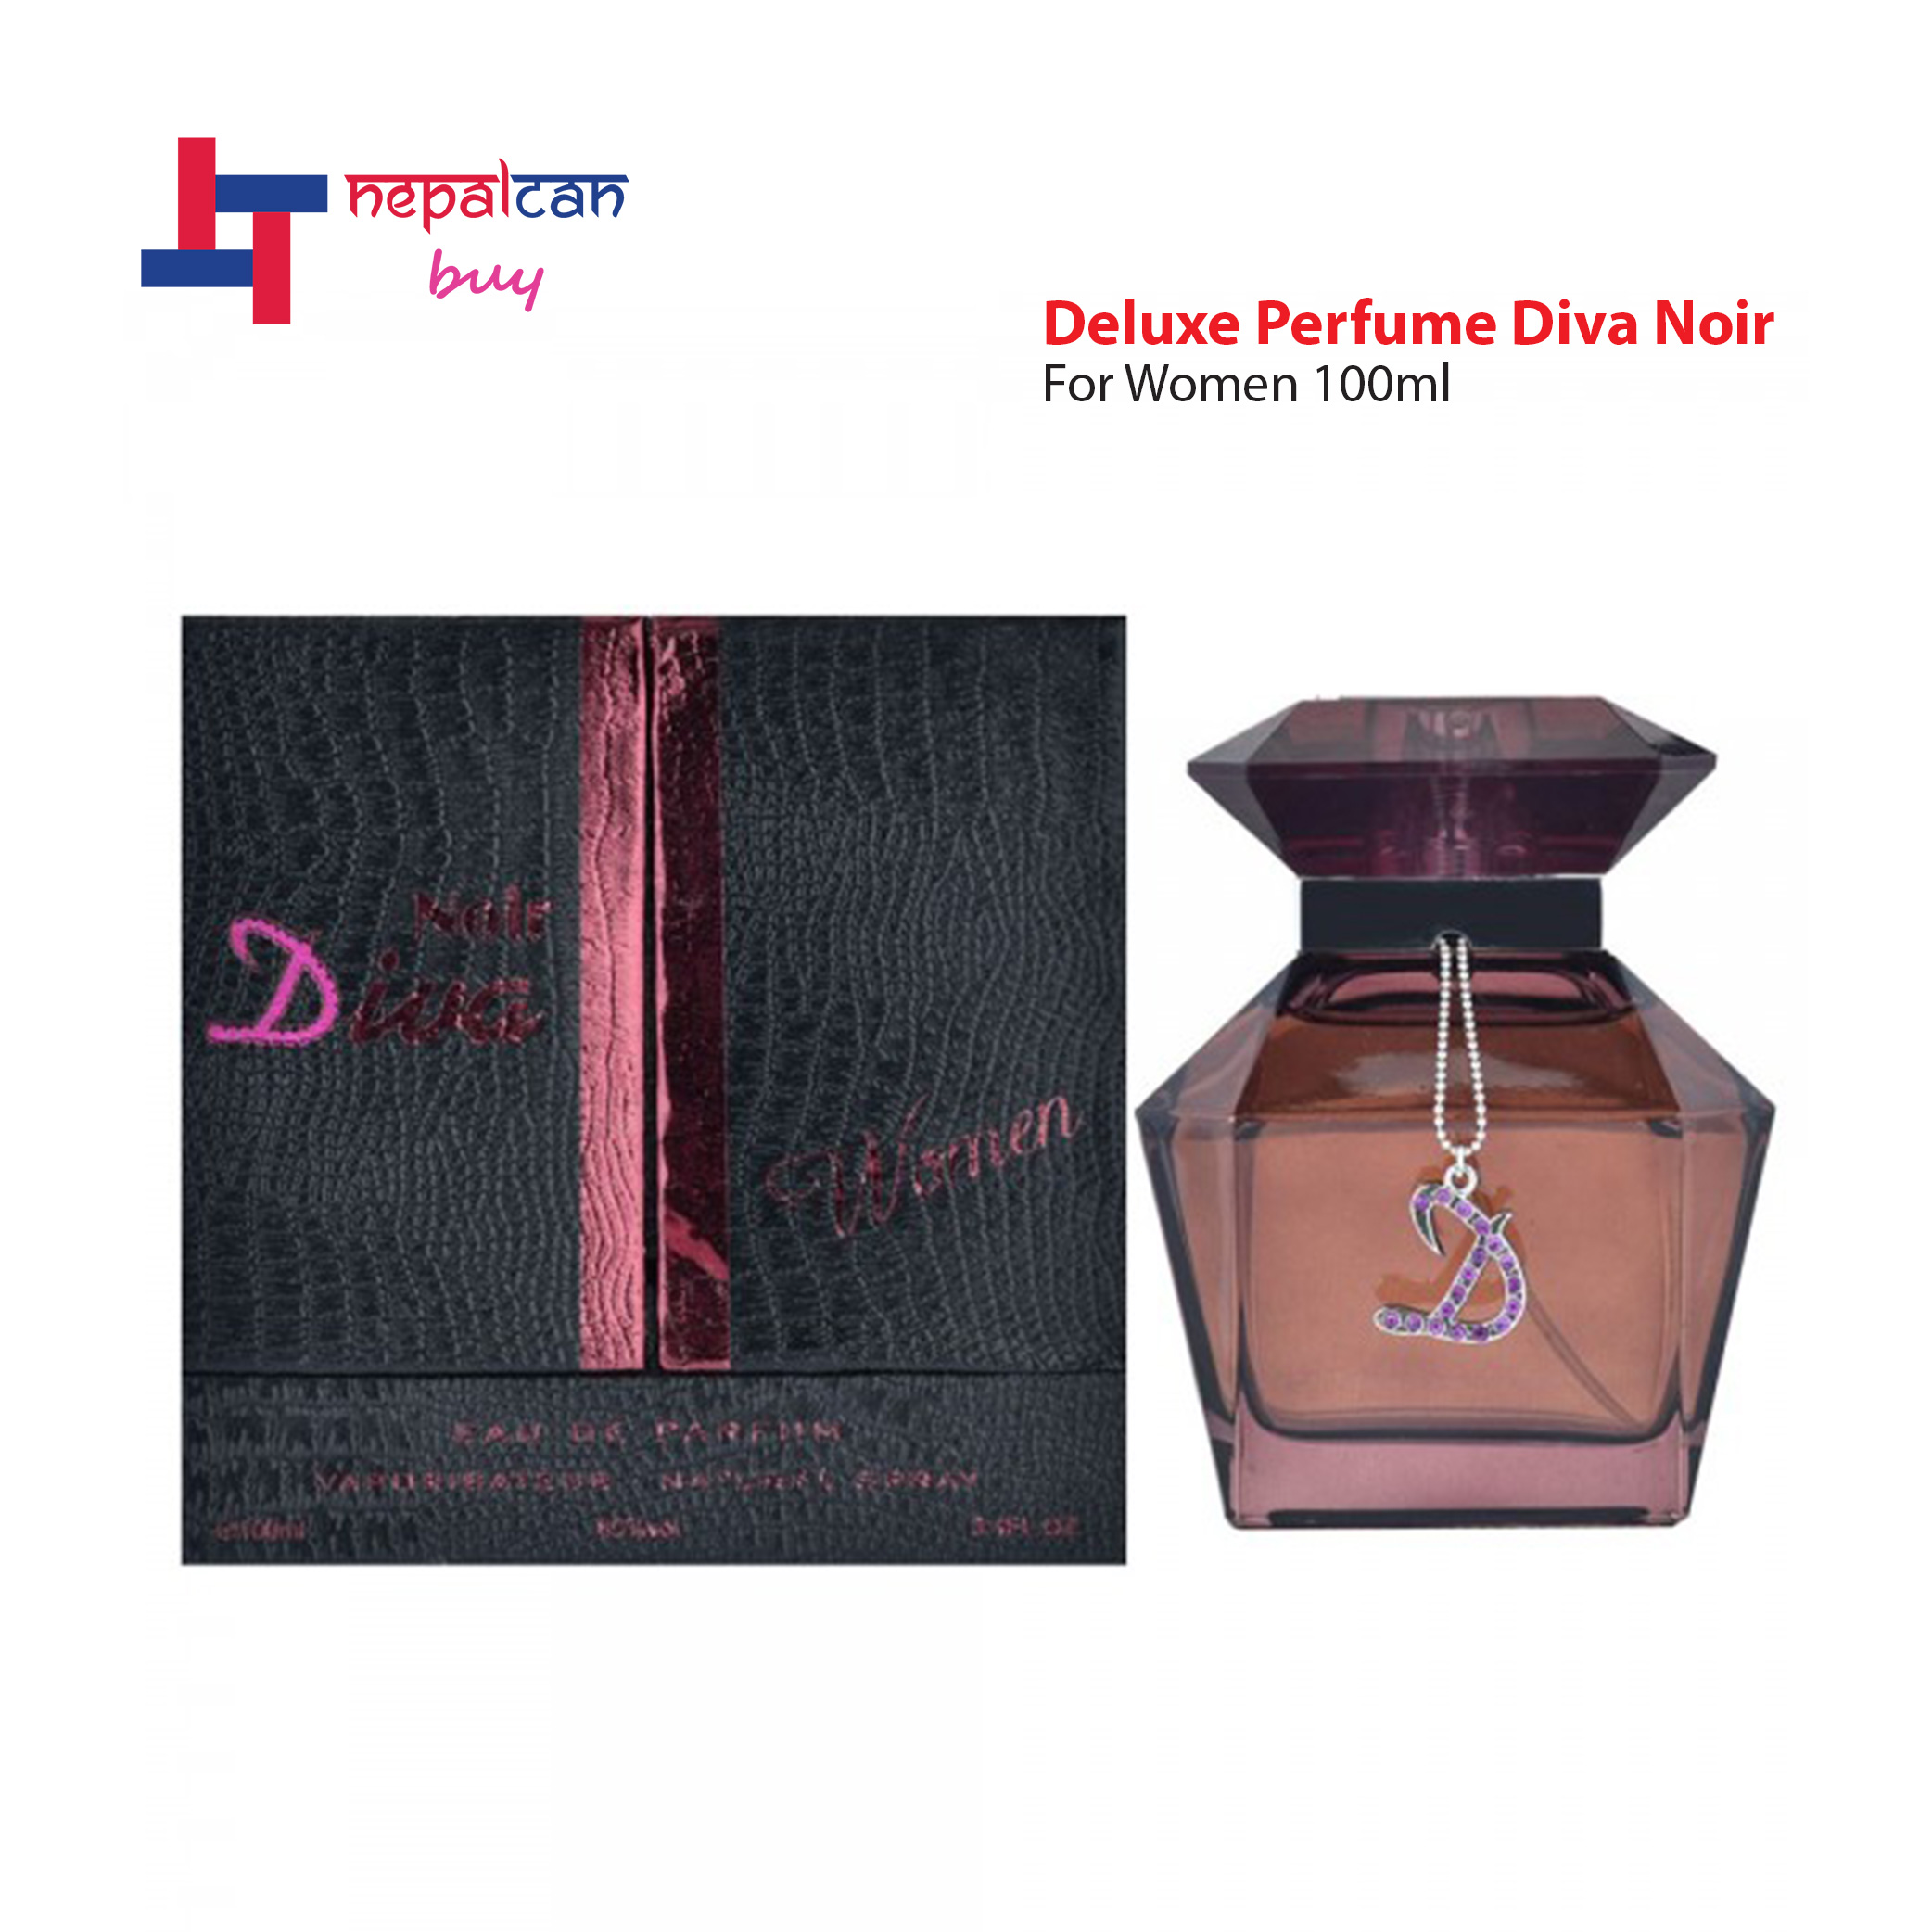 Deluxe Perfume Diva Noir For Women 100ml – Can Buy